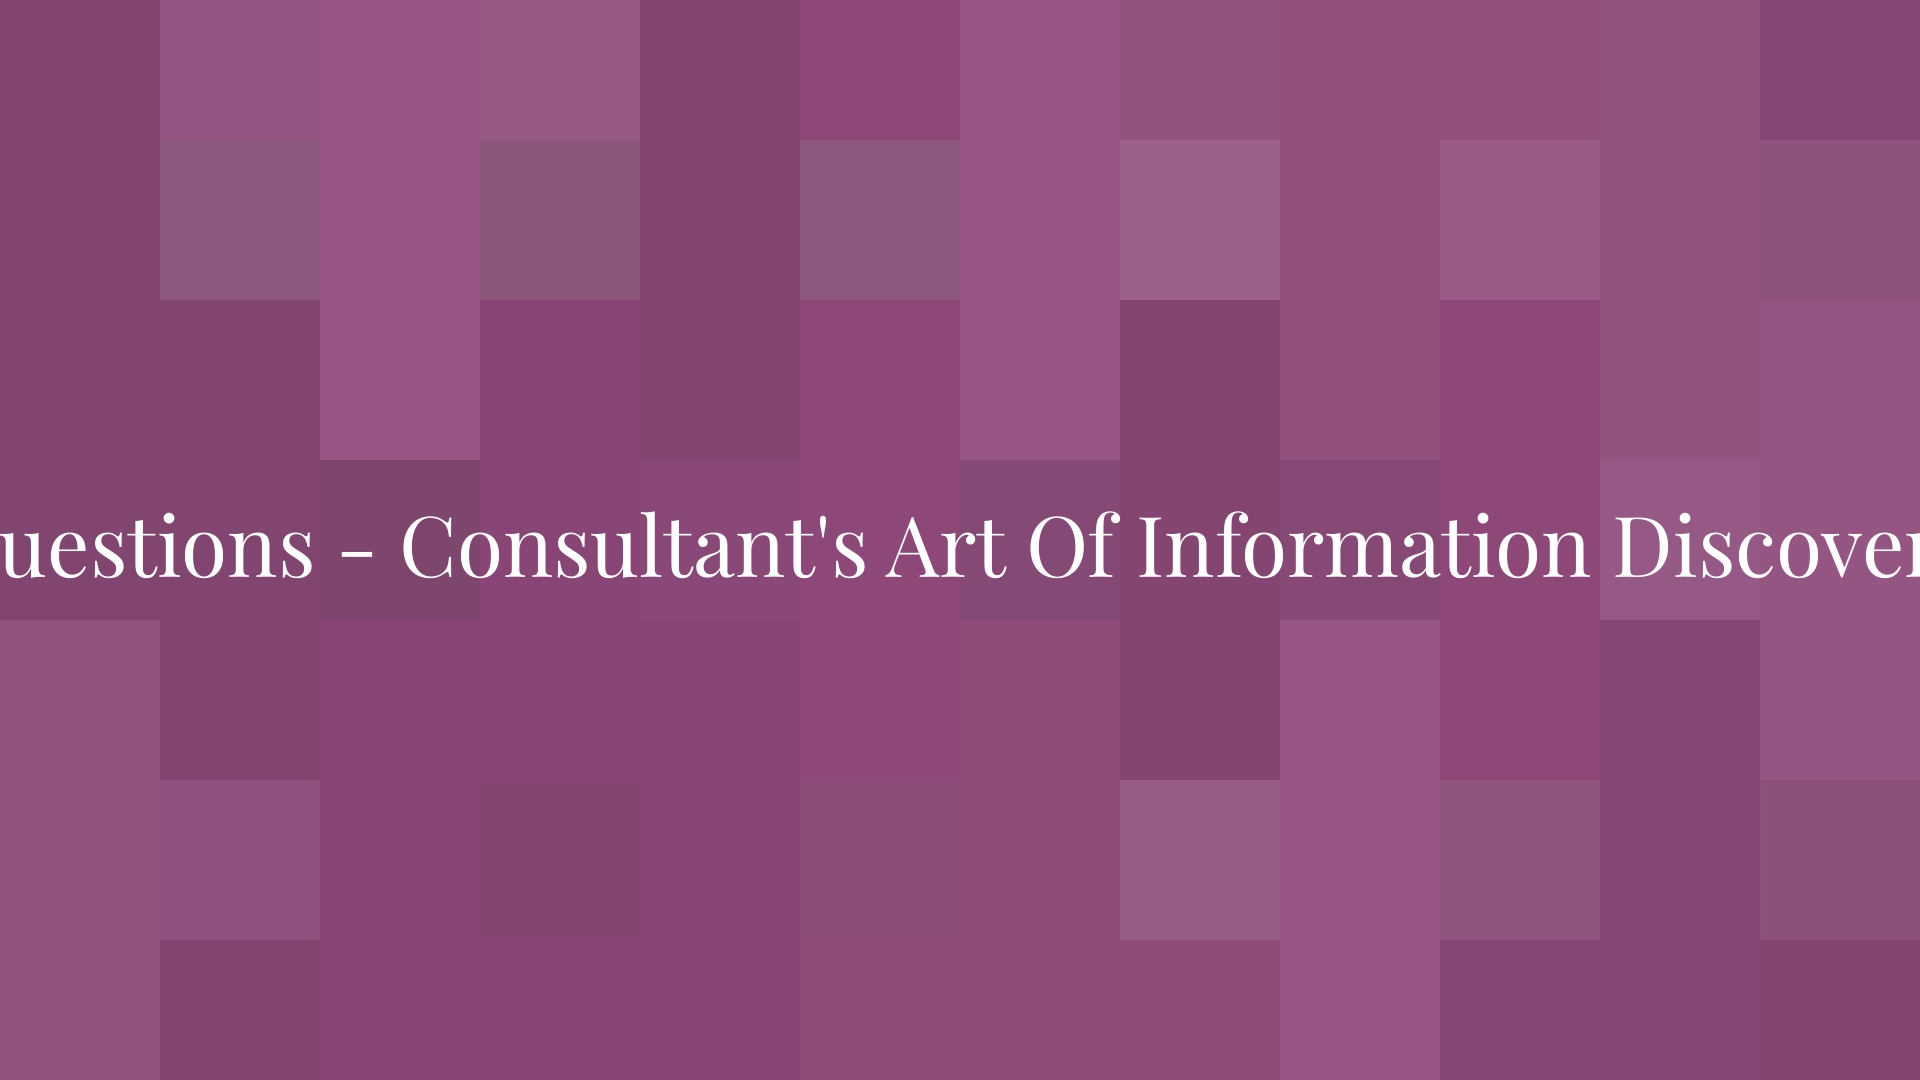 El arte del consultor de descubrir información